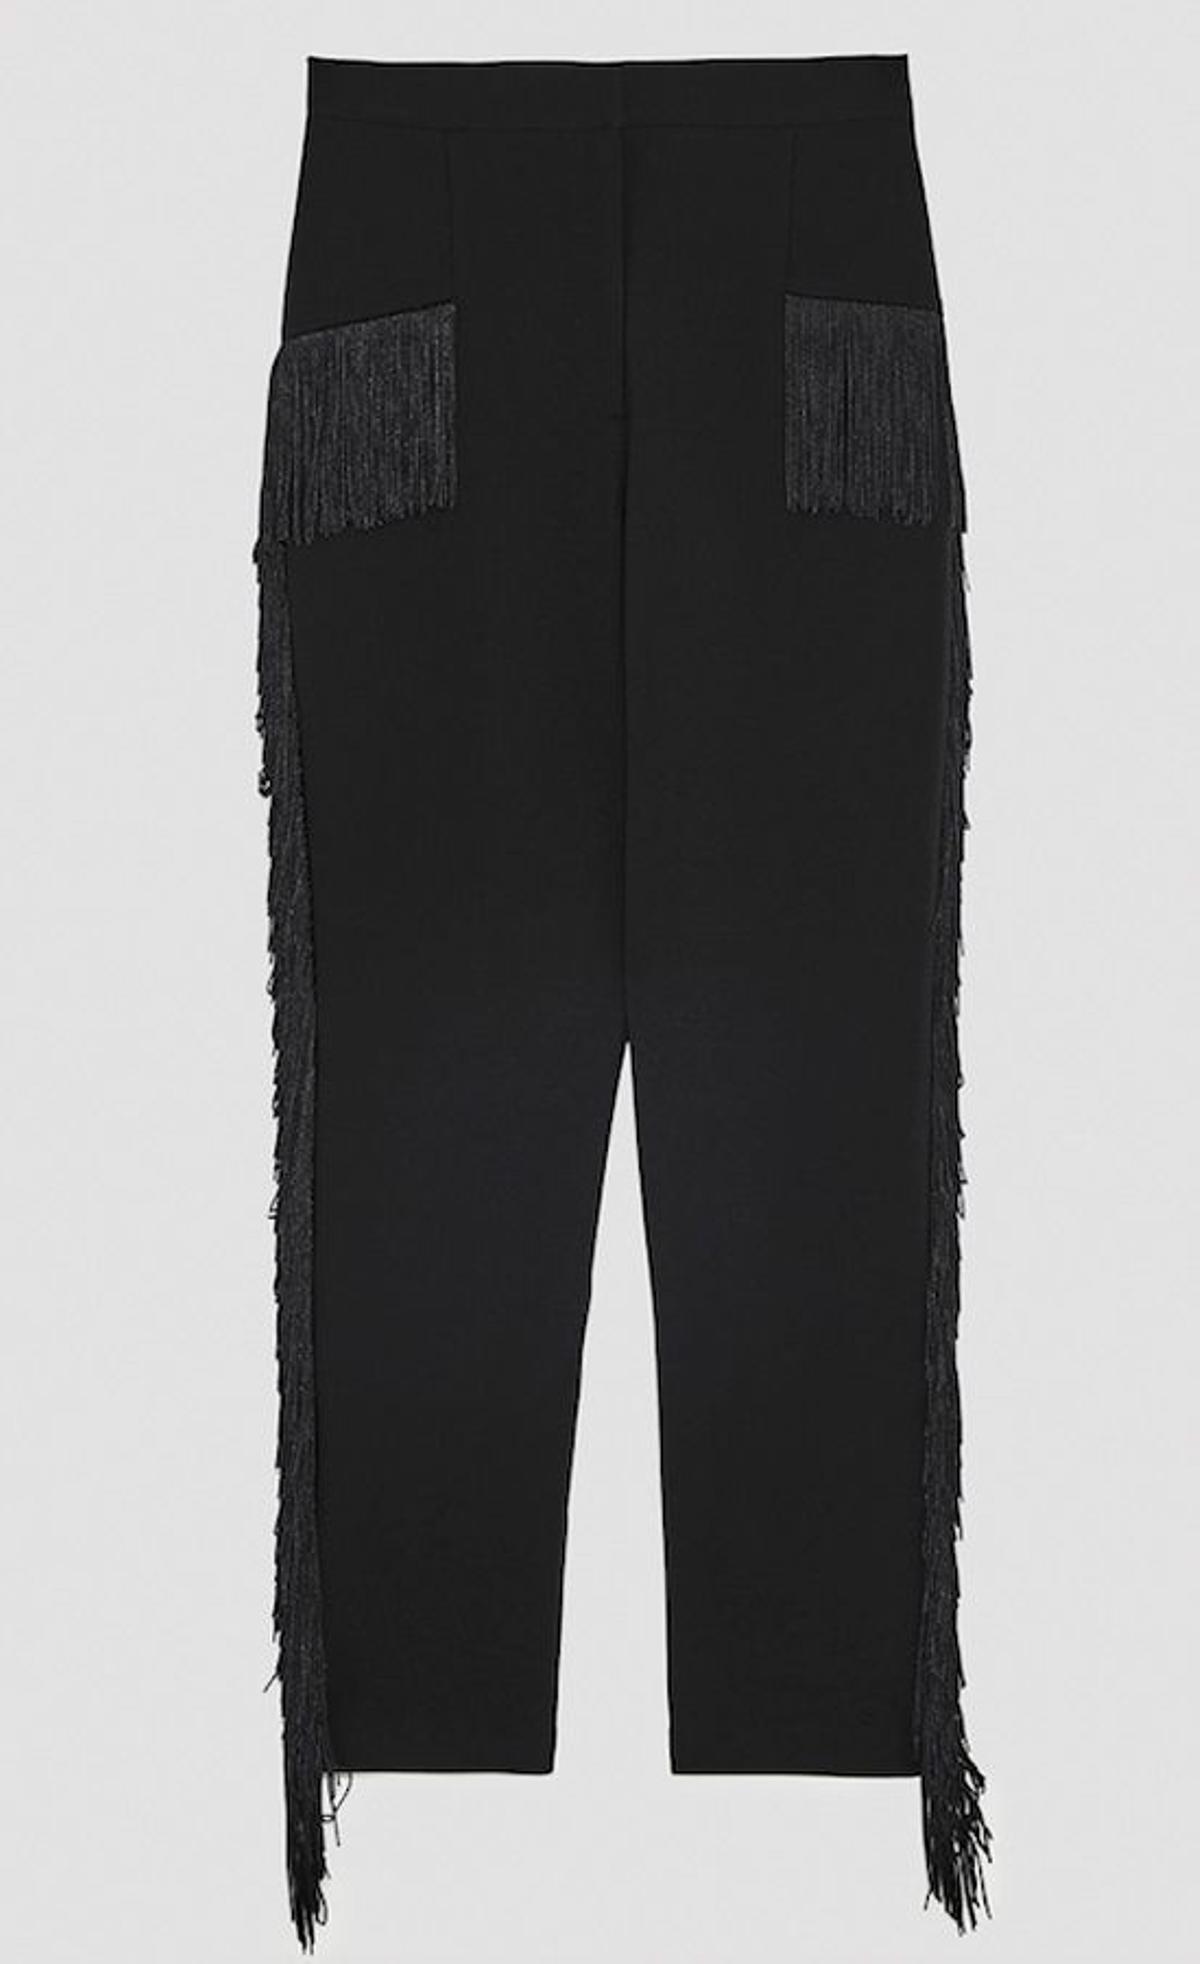 Locos por los flecos: pantalón de Zara